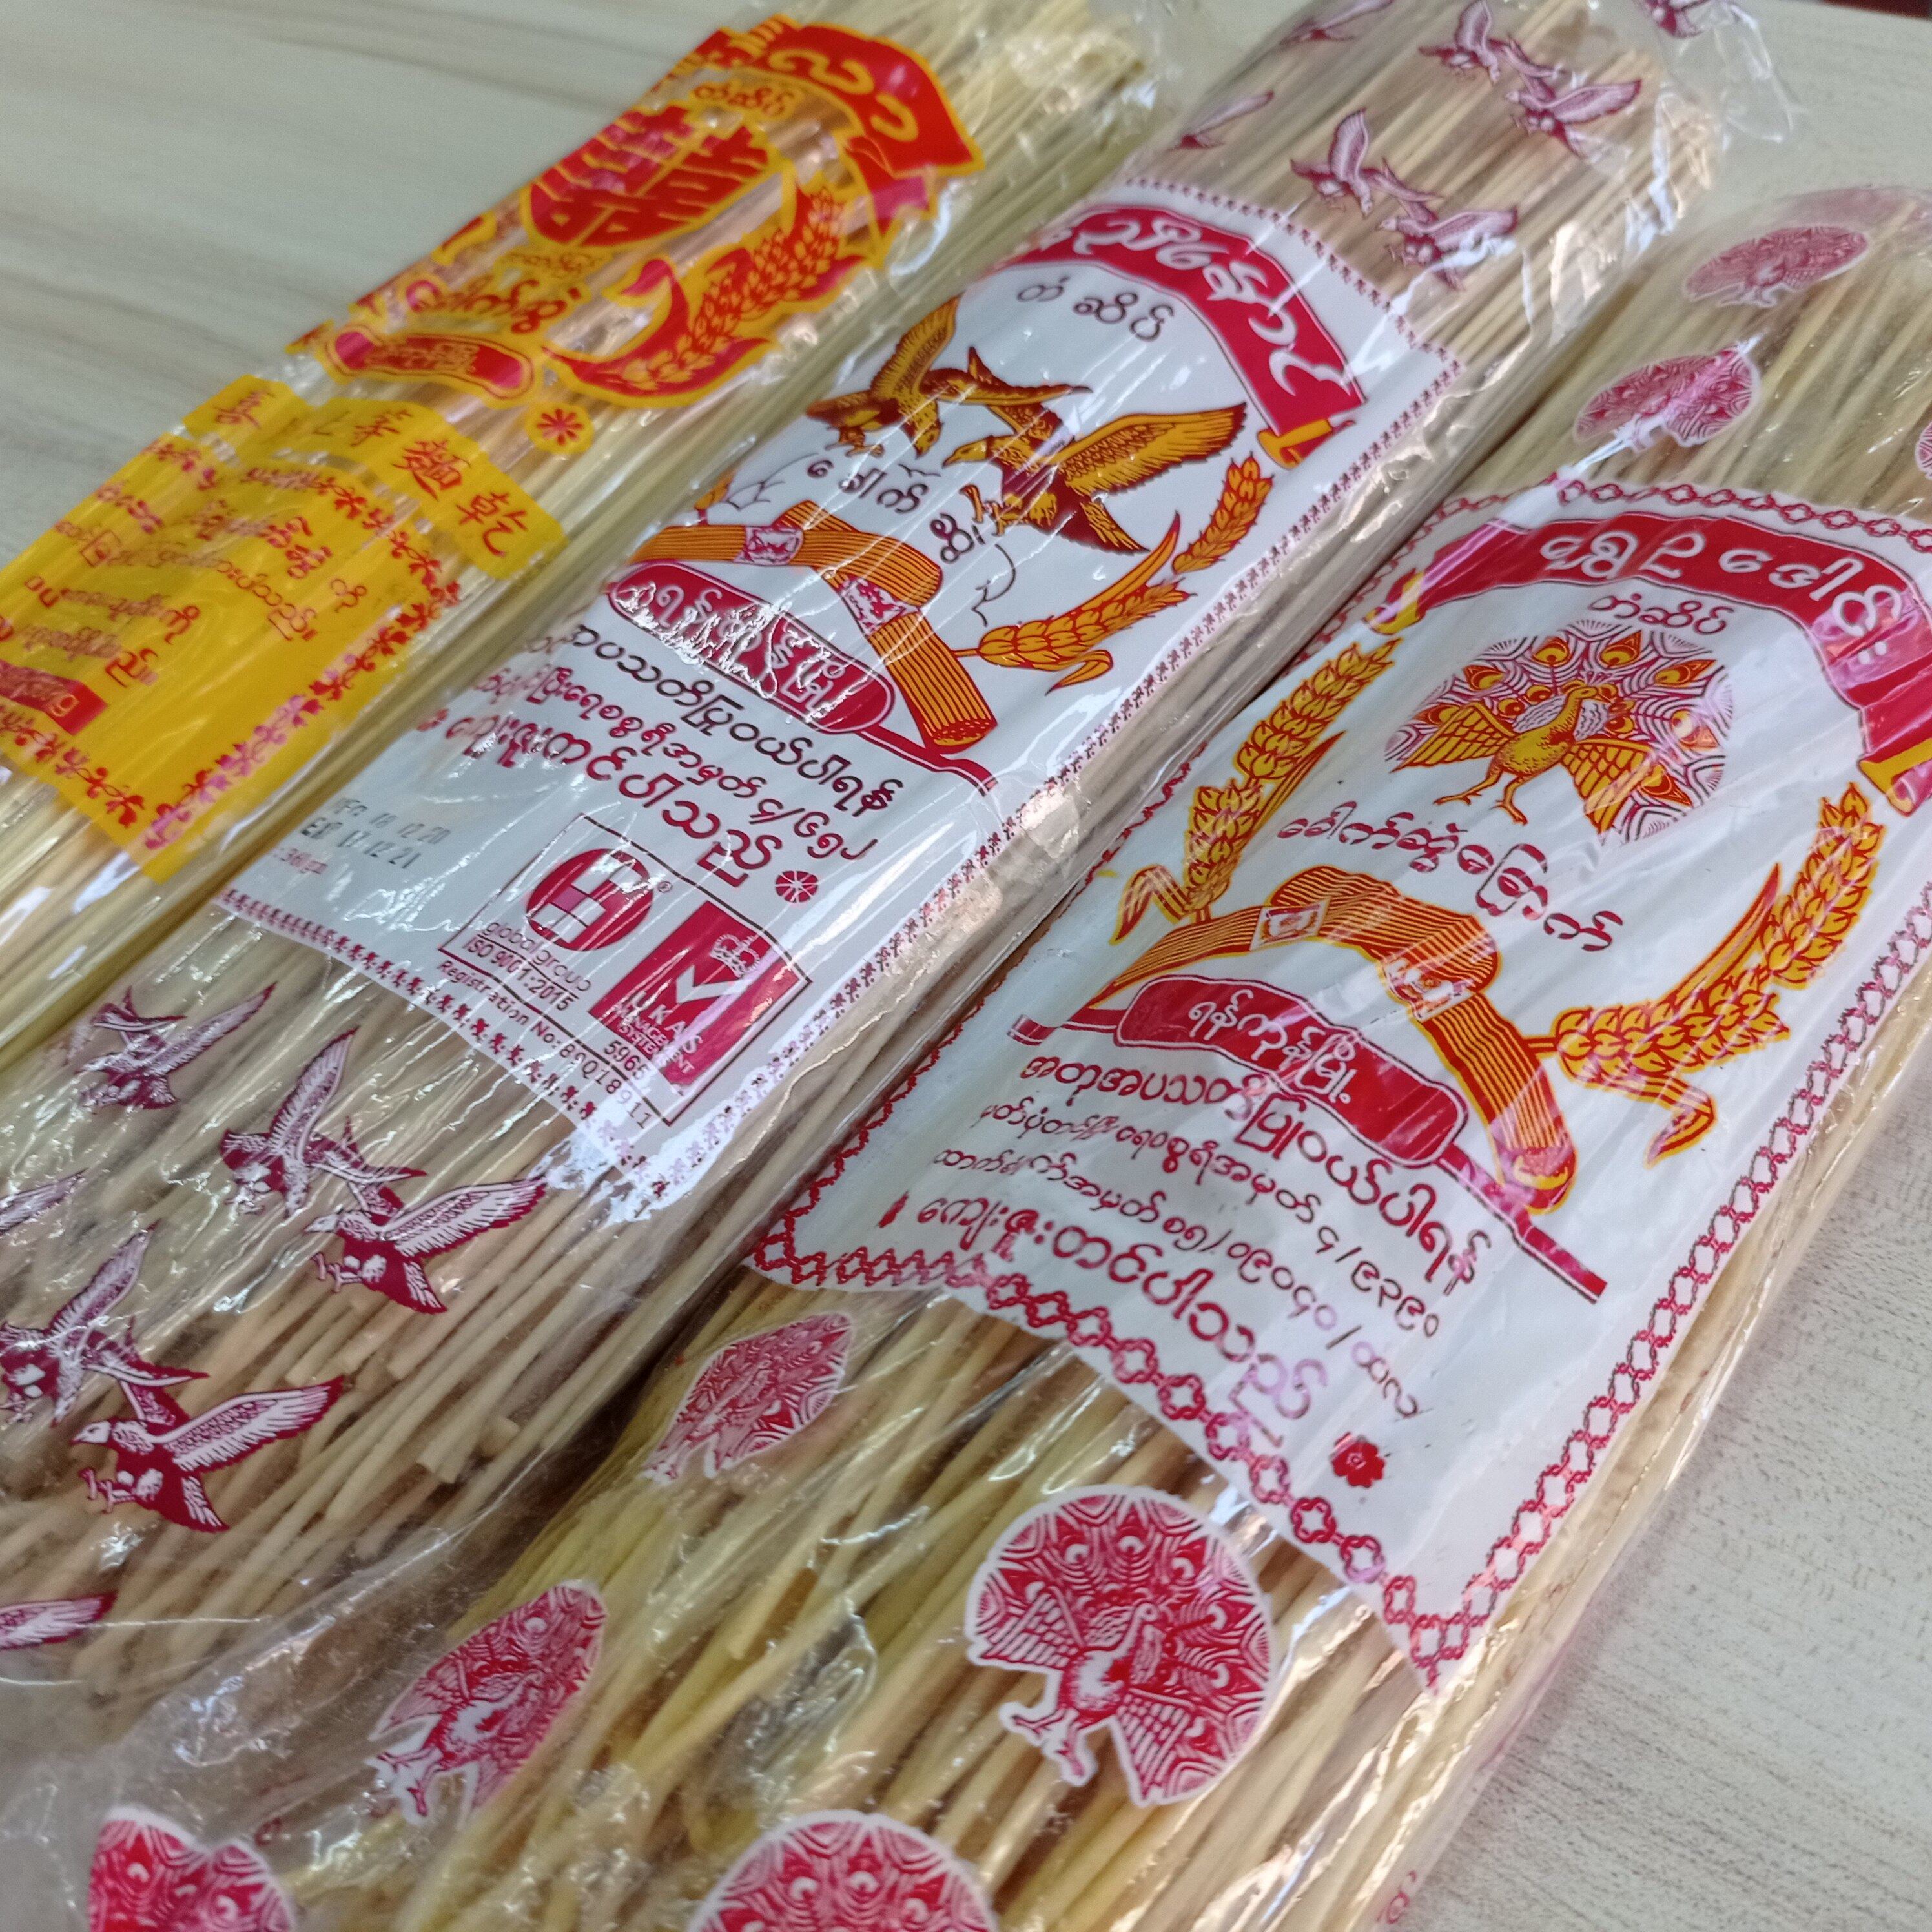 noodles ဂျုံခေါက်ဆွဲ  ข้าวซอยพม่าตรานกคู่  บะหมี่พม่า (1 ห่อ 350 g)จัดส่งสินค้าทุกวัน